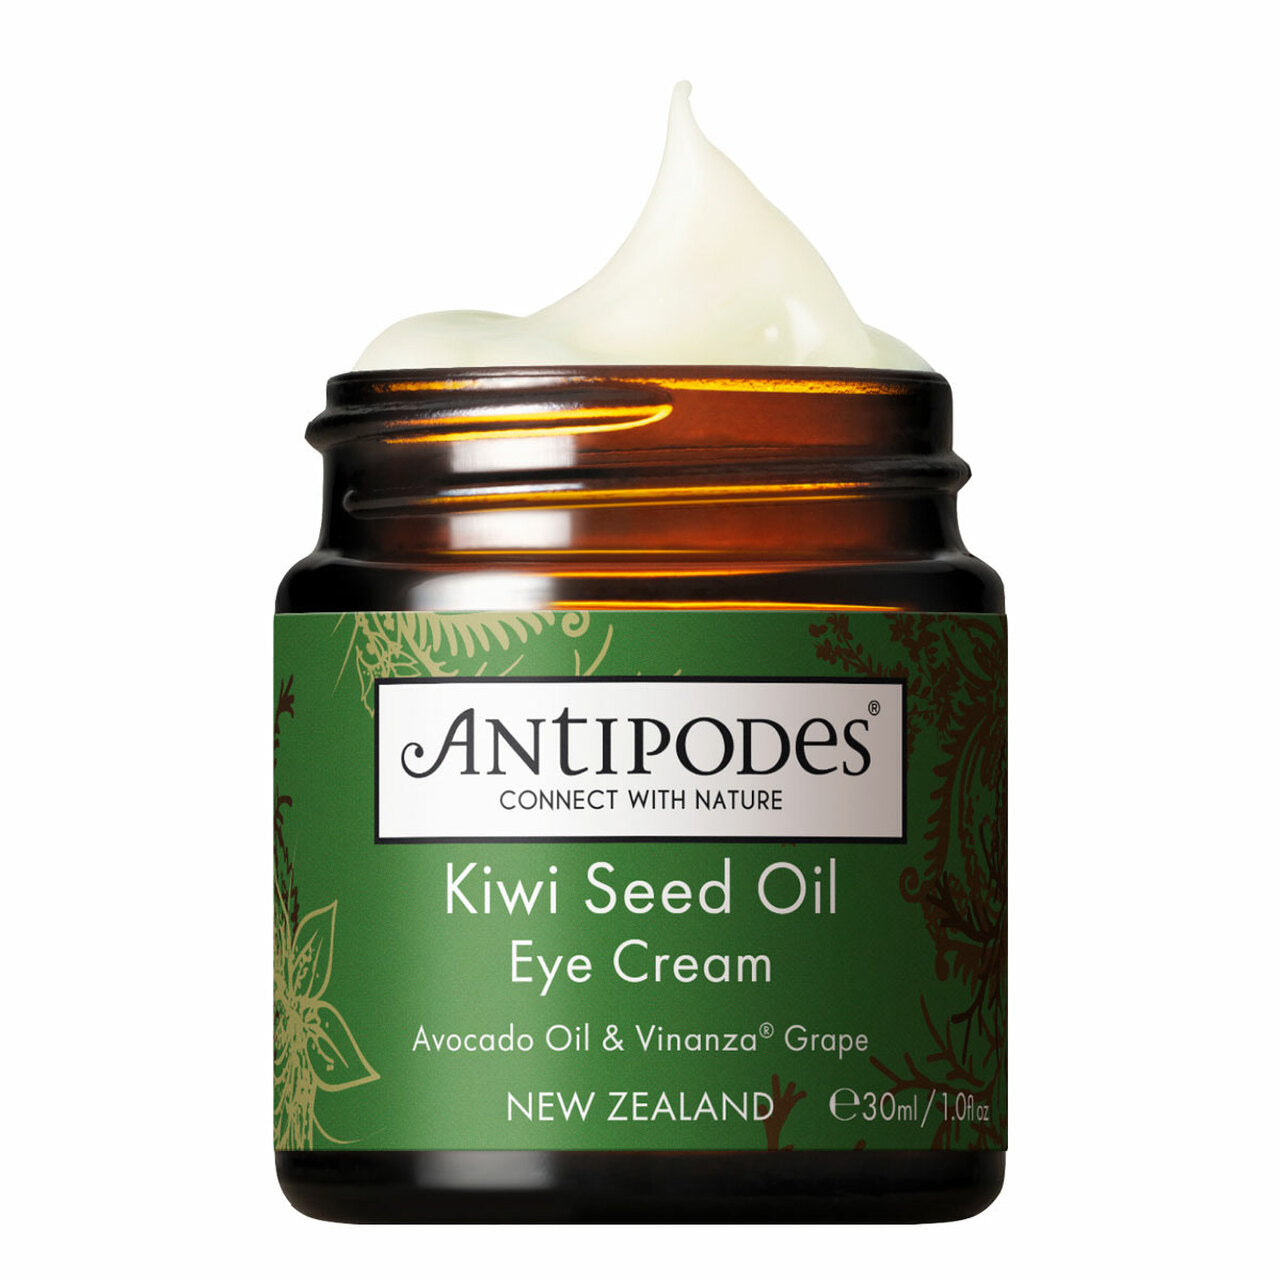 Antipodes Kiwi Seed Oil Eye Cream 30ml.